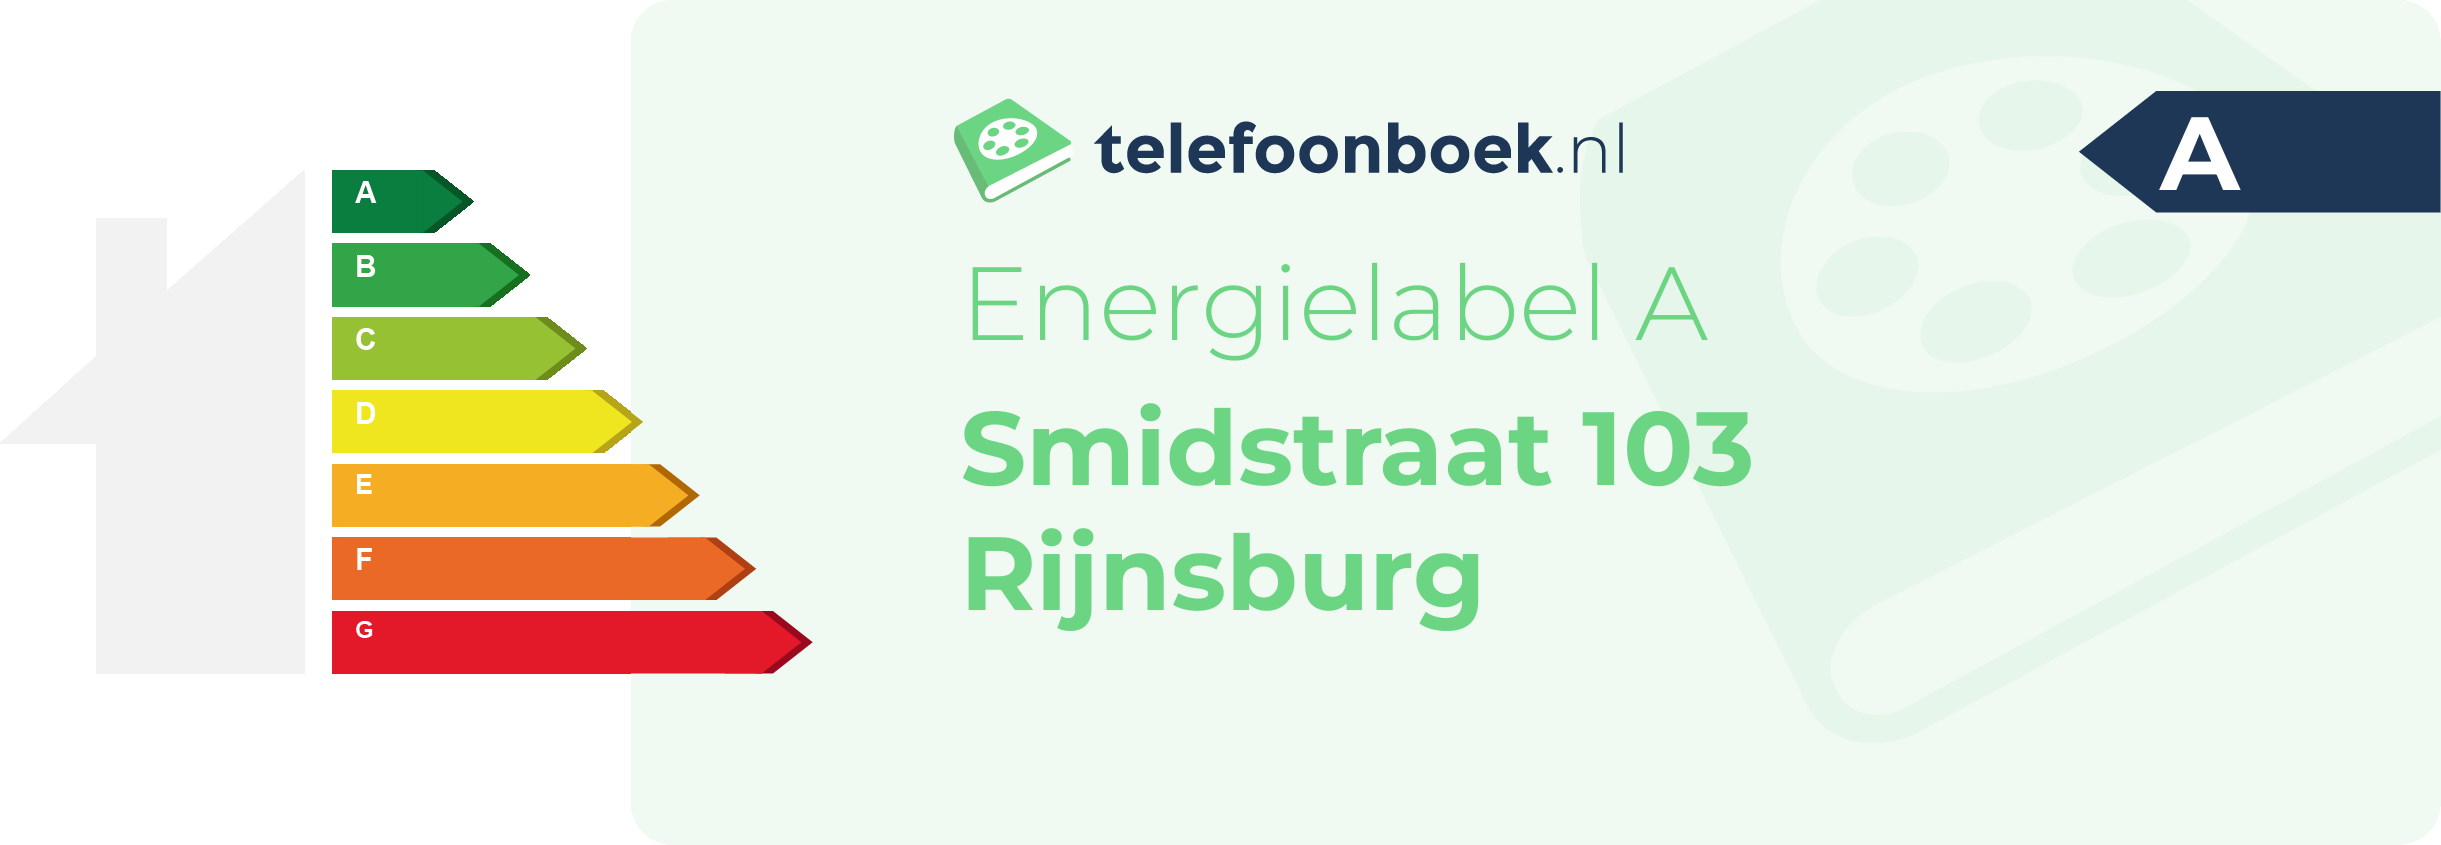 Energielabel Smidstraat 103 Rijnsburg